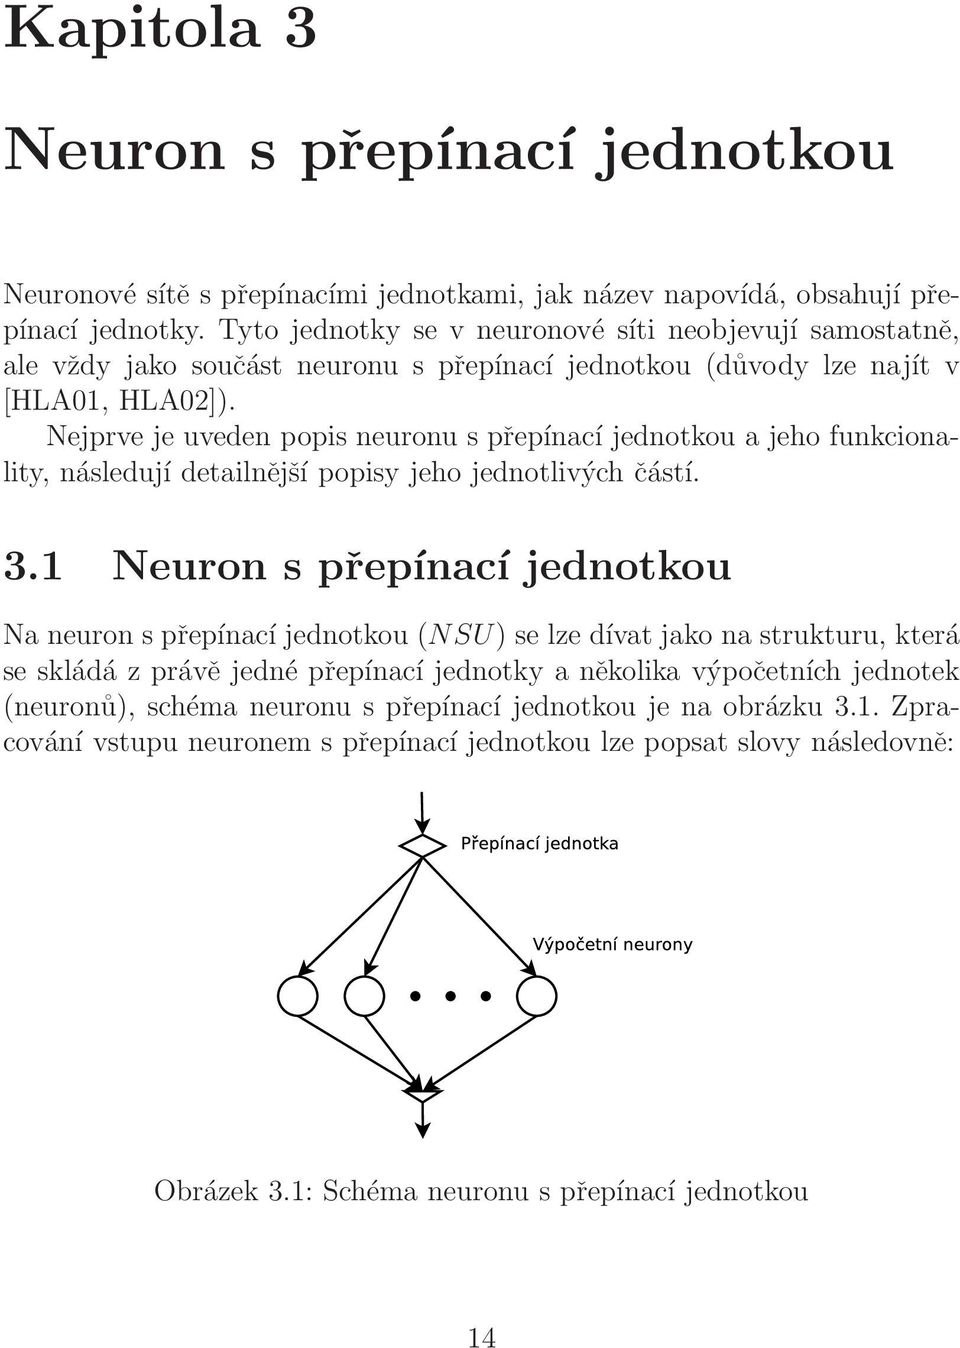 Nejprve je uveden popis neuronu s přepínací jednotkou a jeho funkcionality, následují detailnější popisy jeho jednotlivých částí. 3.